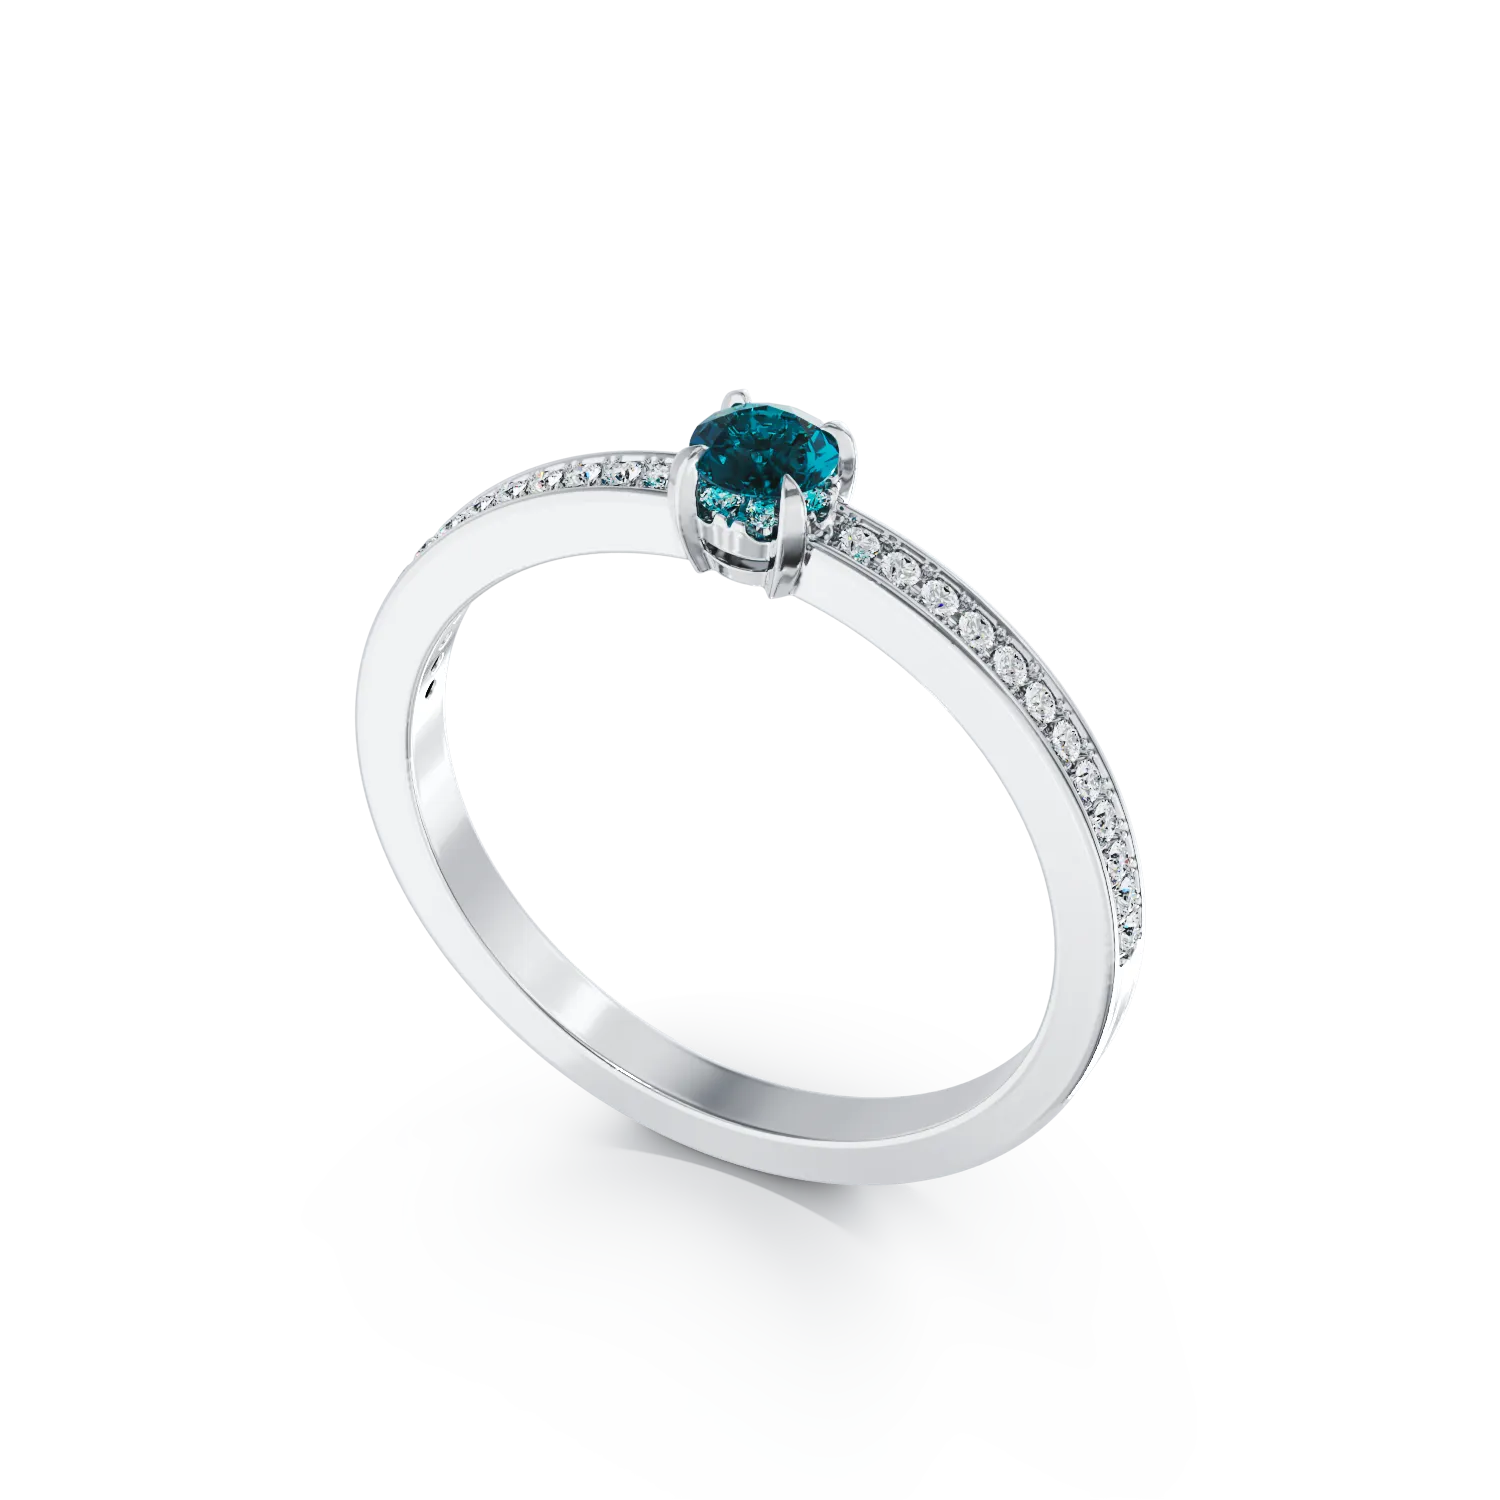 18 karátos fehérarany eljegyzési gyűrű 0.21 karátos kék gyémánttal és 0.16 karátos tiszta gyémántokkal